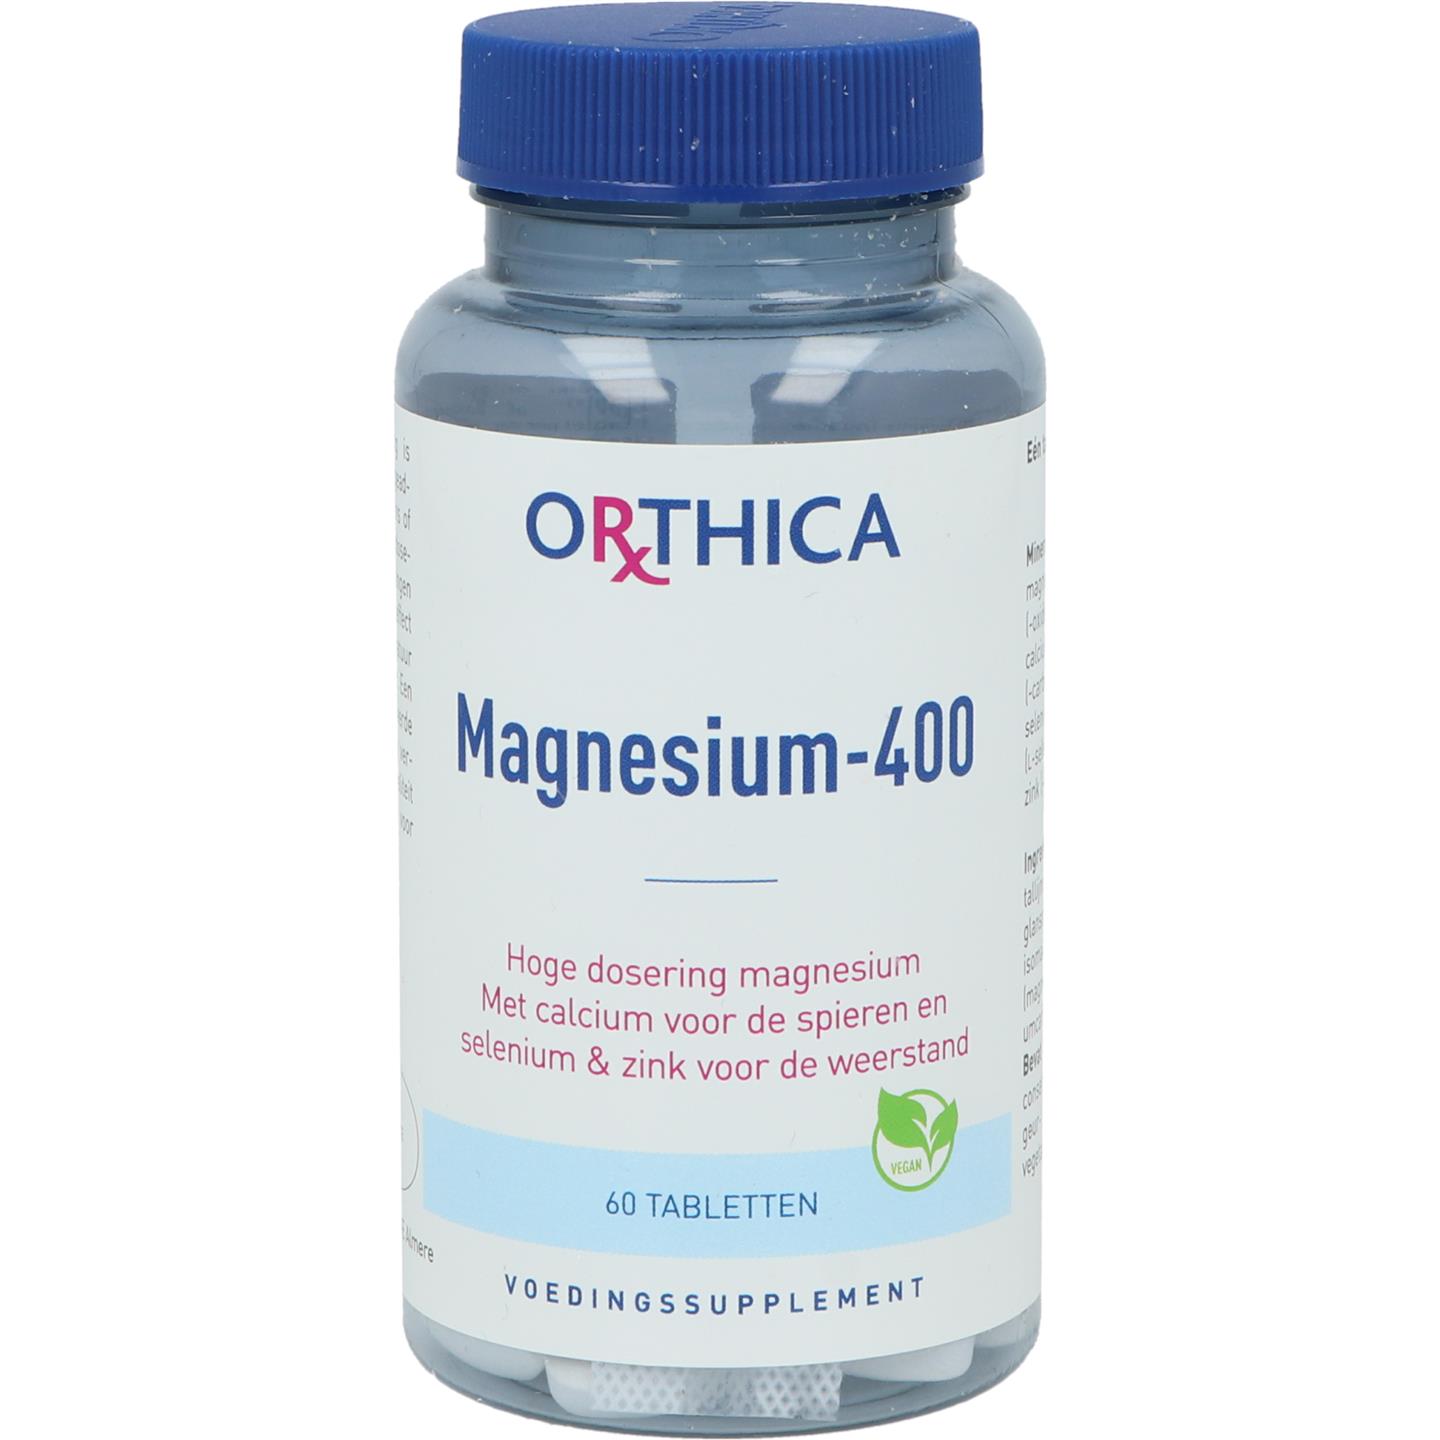 Magnesium-400